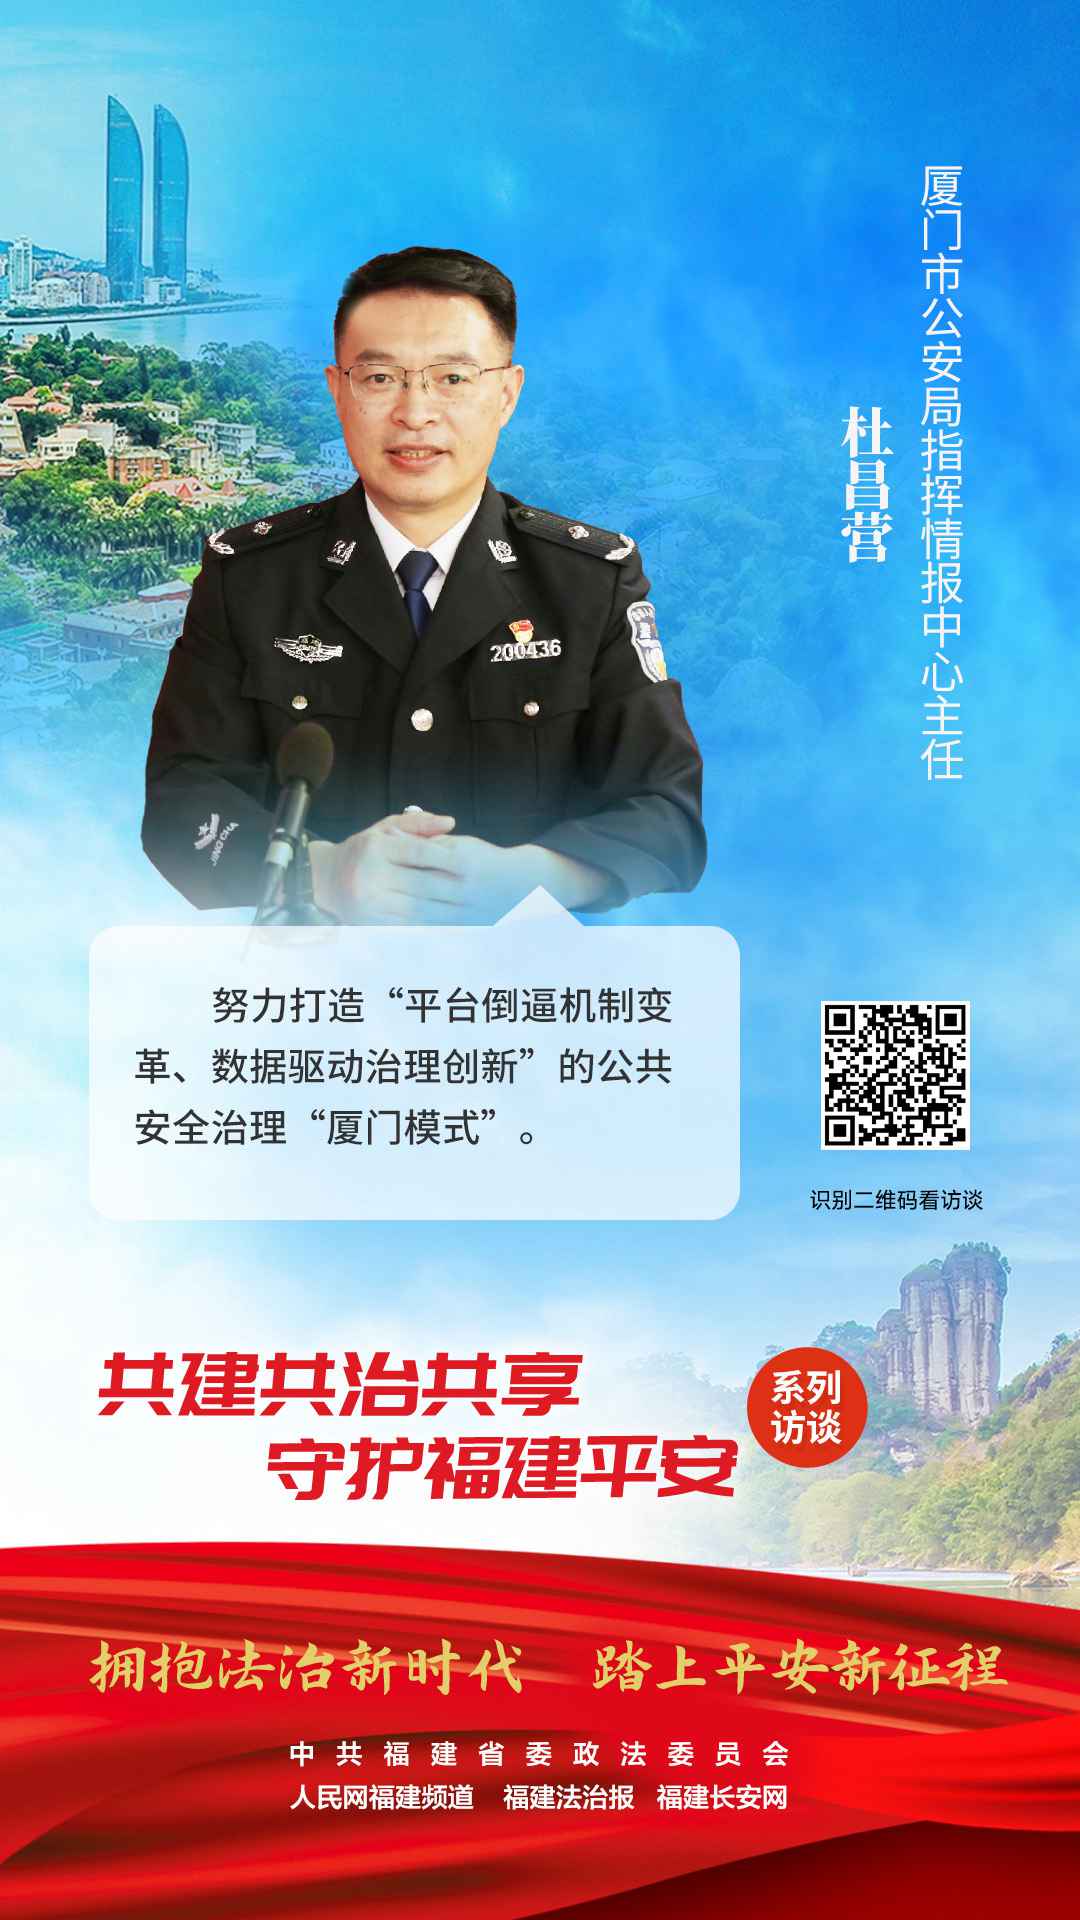 廈門市公安局情報指揮中心主任 杜昌營